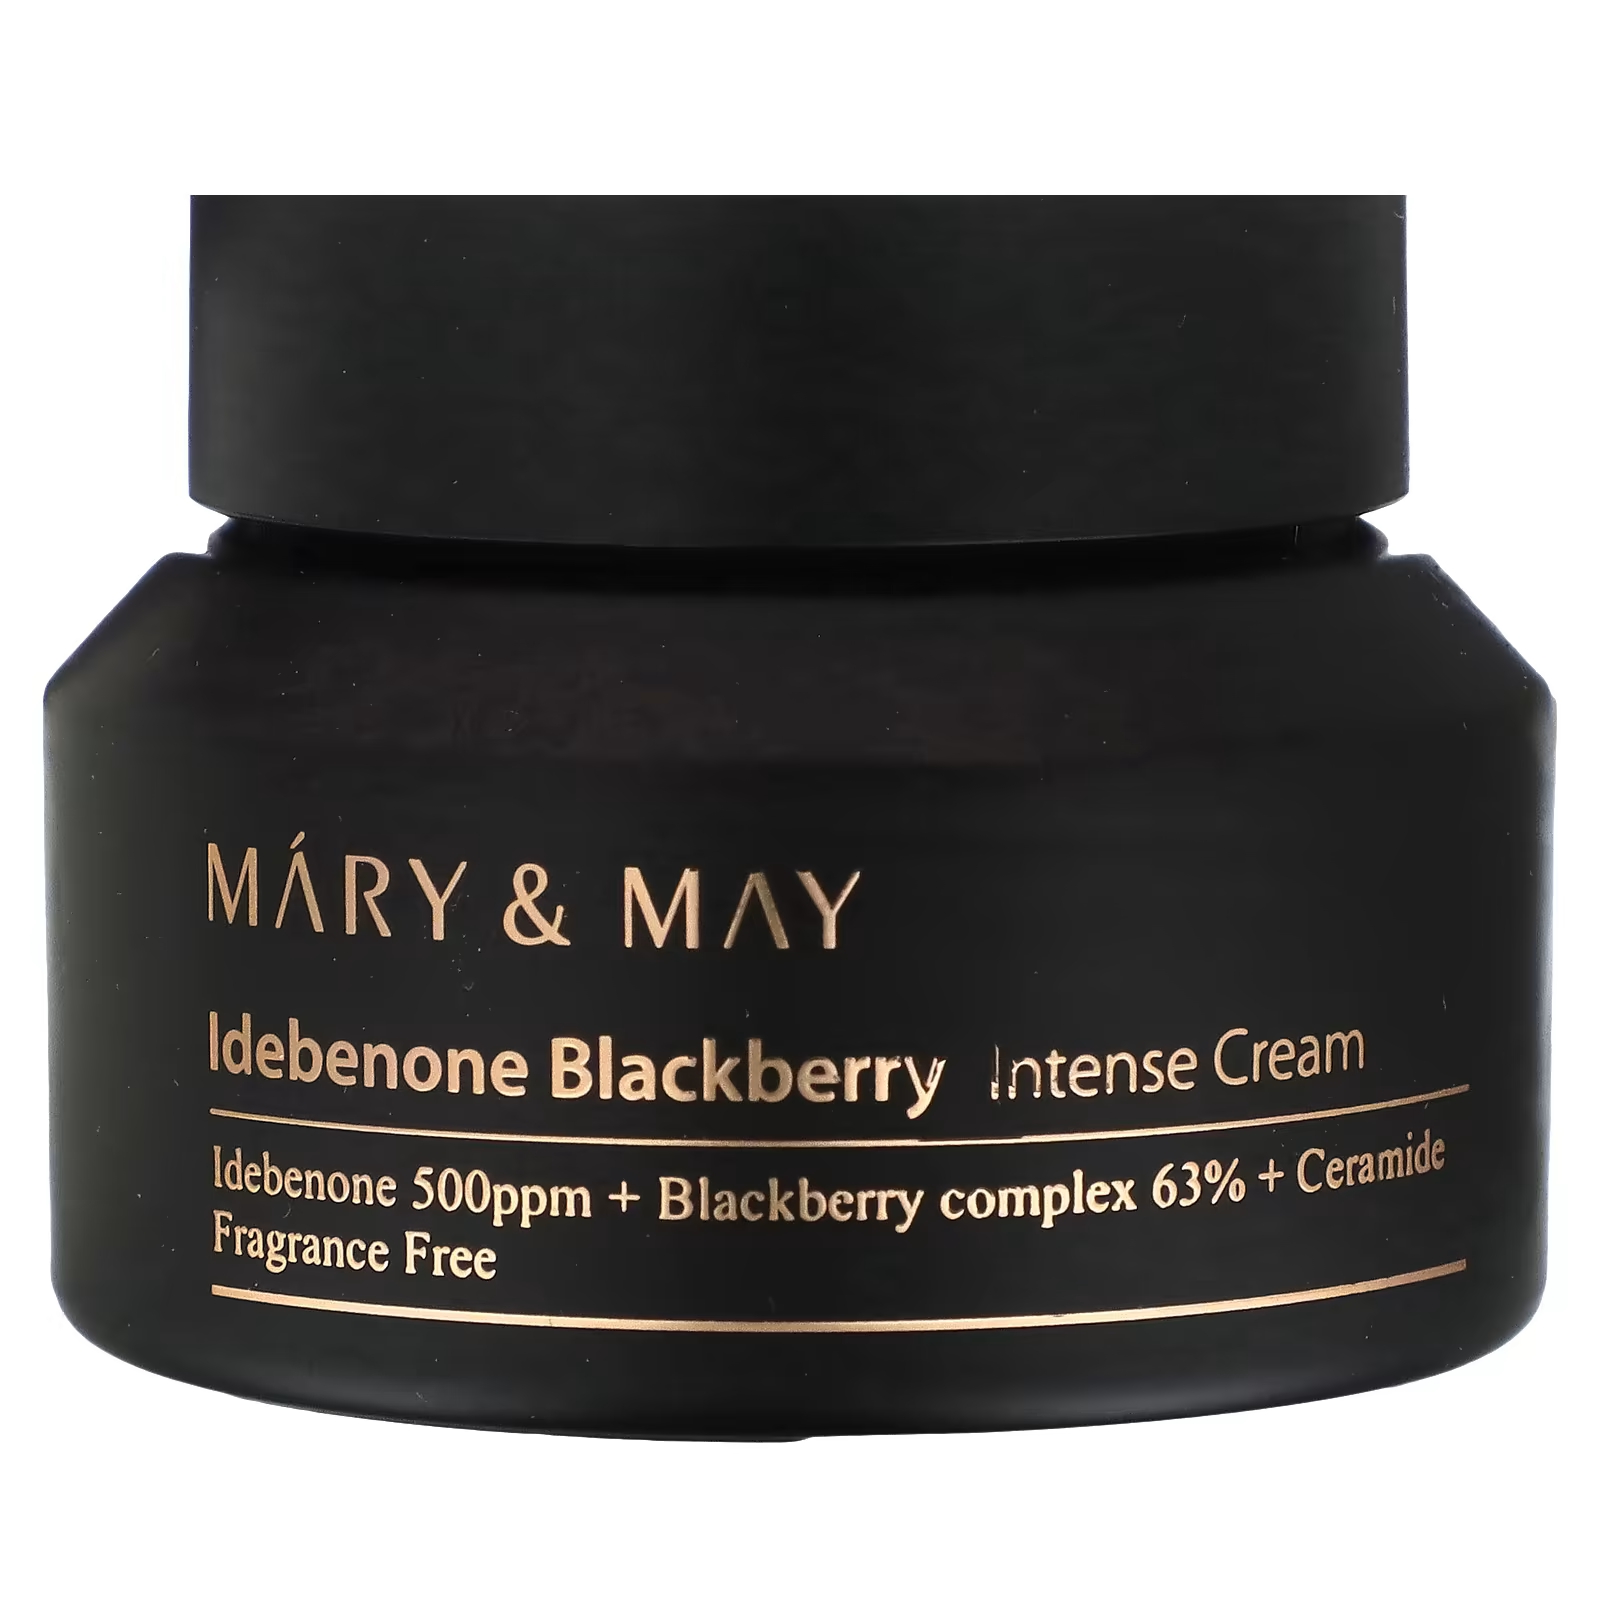 Интенсивный крем Mary & May Idebenone Blackberry